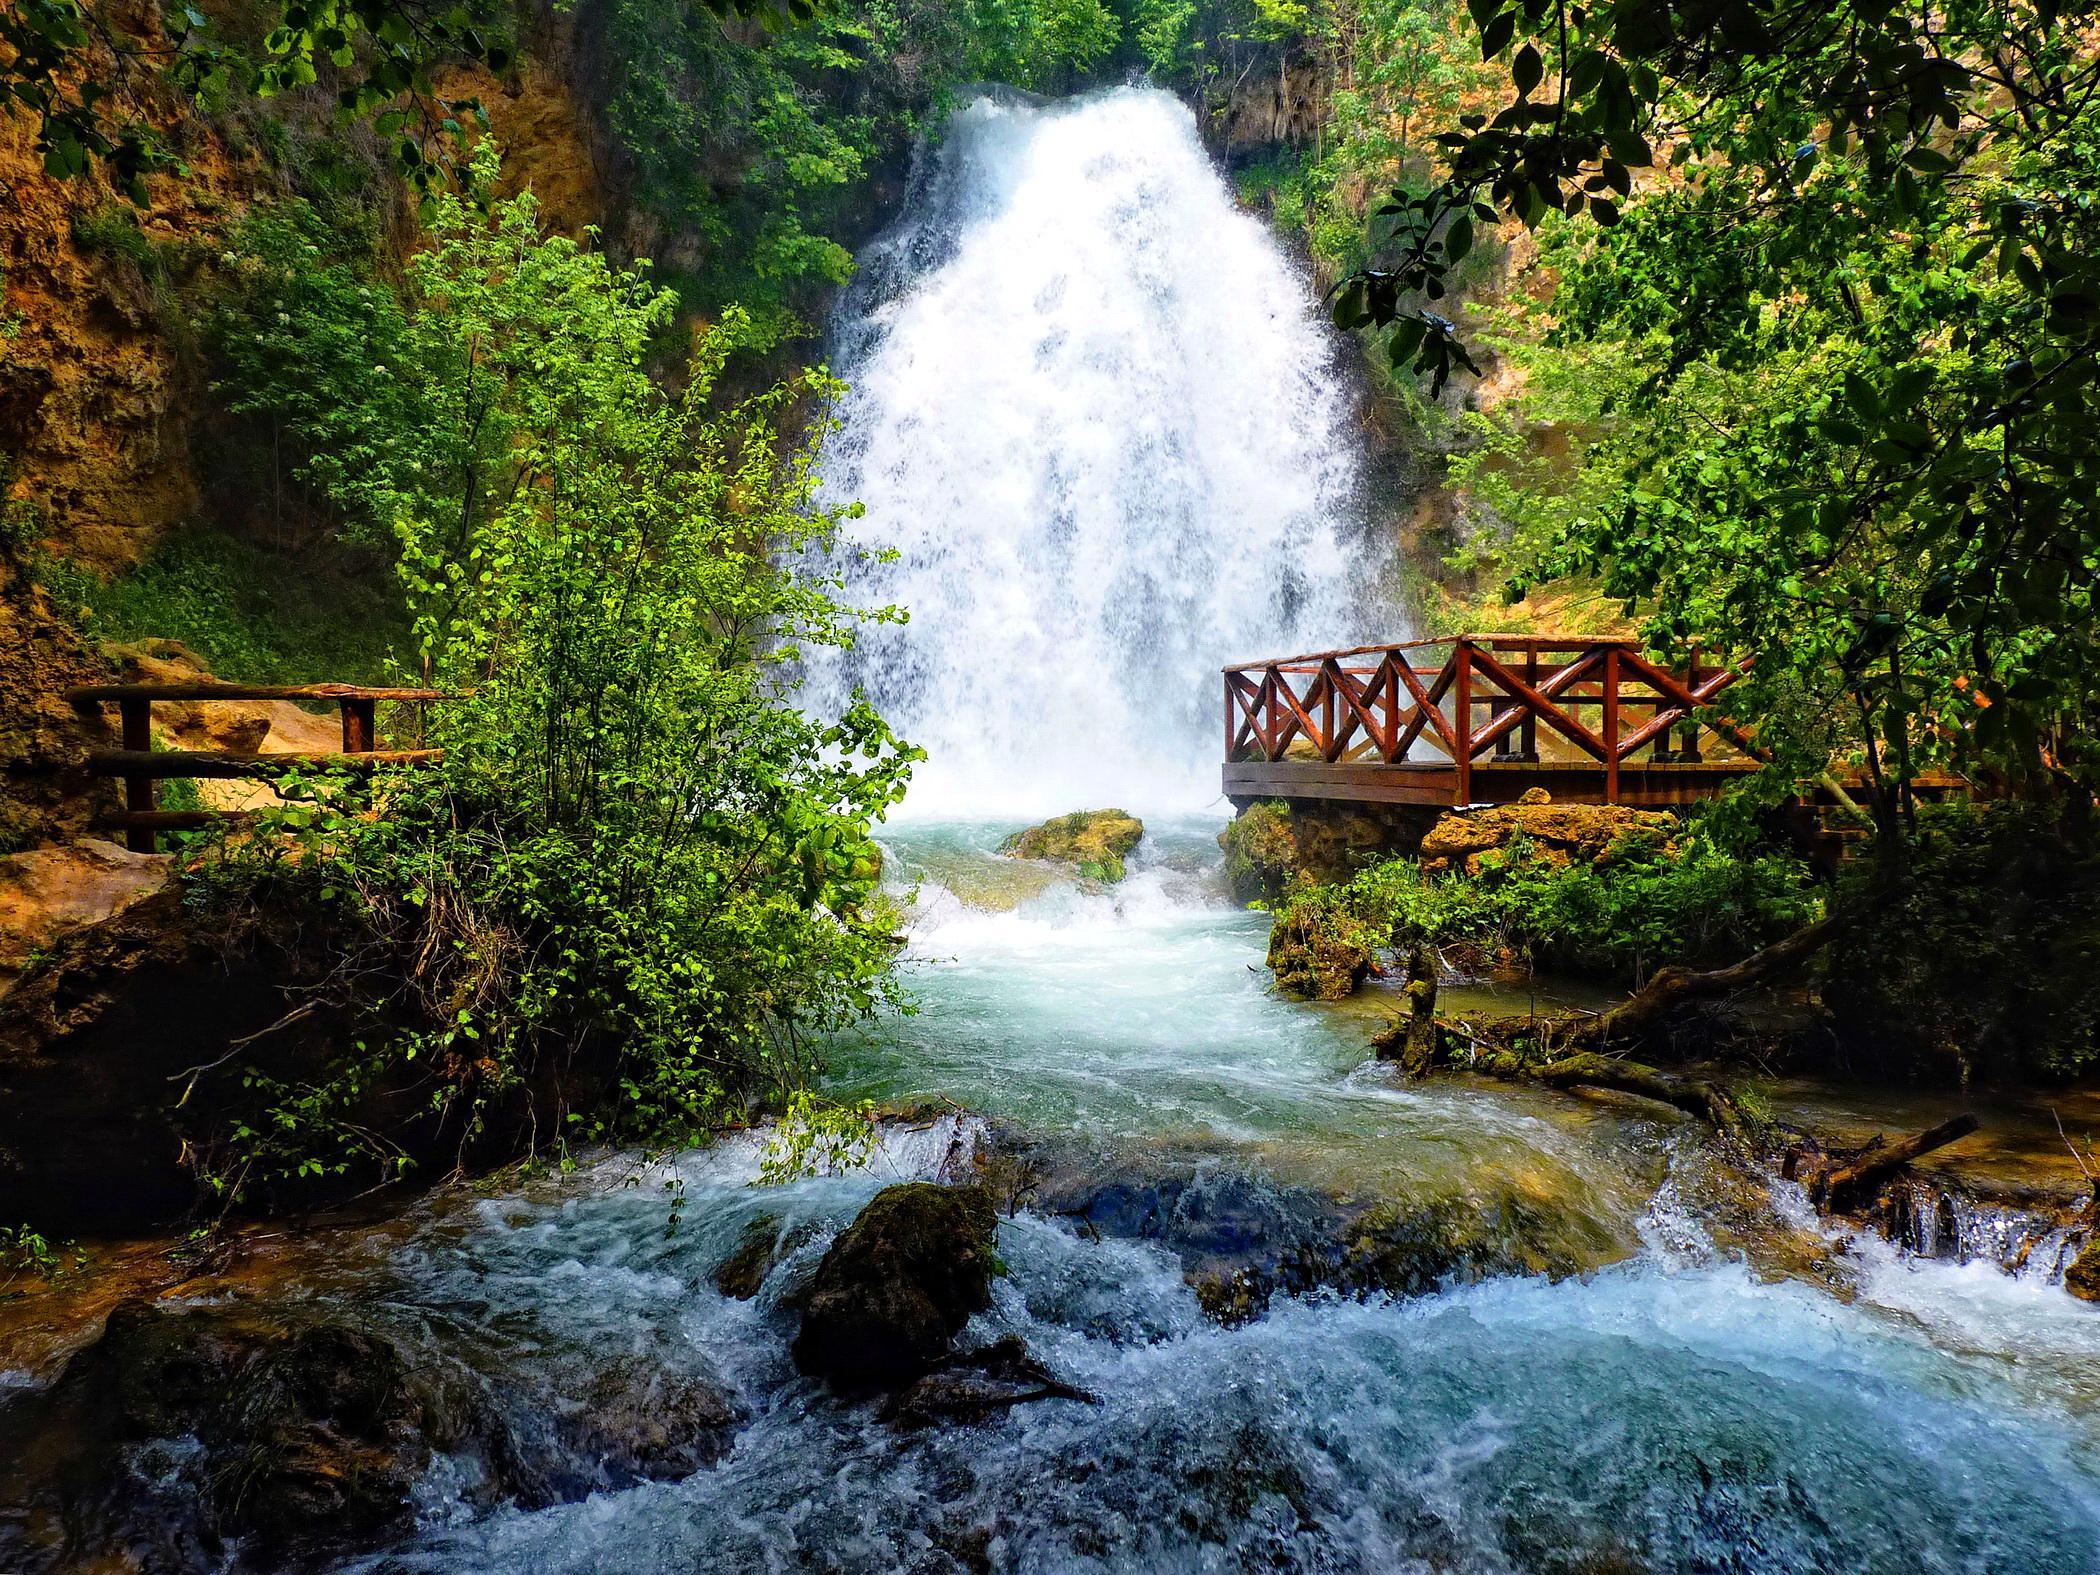 Скачать обои бесплатно Природа, Река, Водопады, Водопад, Лес, Дерево, Зеленый, Земля/природа картинка на рабочий стол ПК